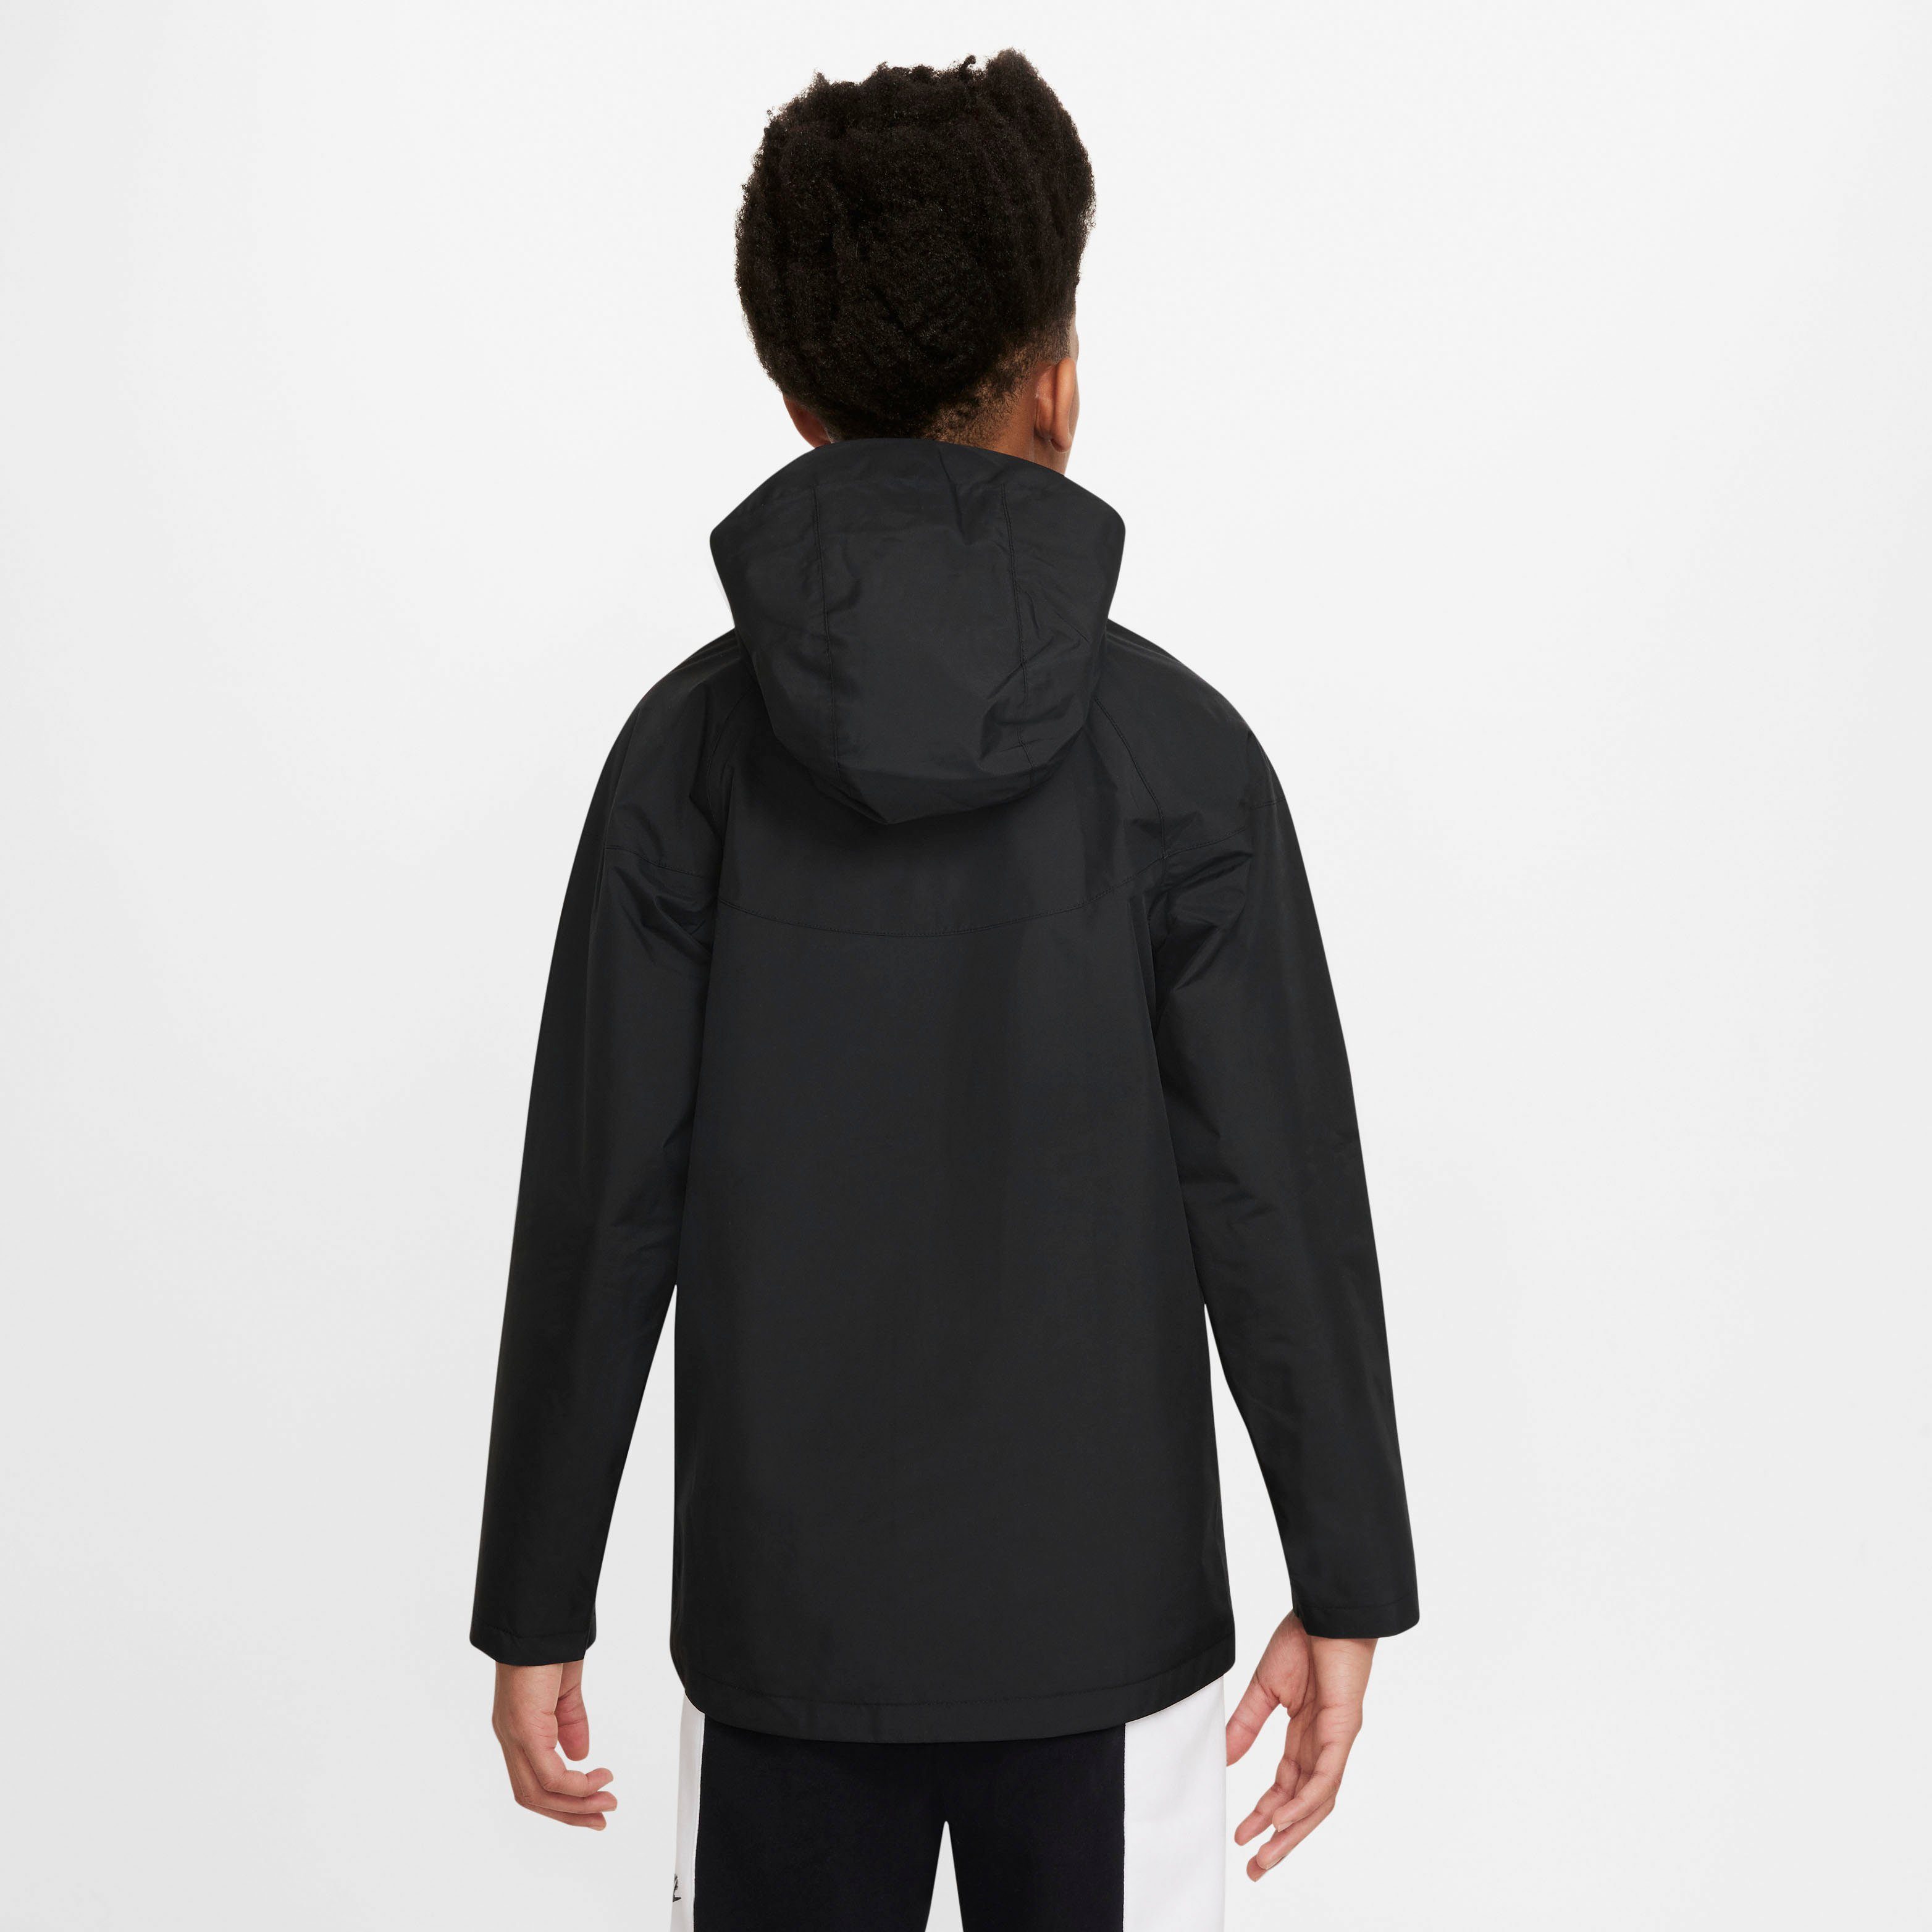 Storm-FIT Kids' Windrunner Sportswear Jacket Big BLACK/BLACK/WHITE Nike Windbreaker (Boys)